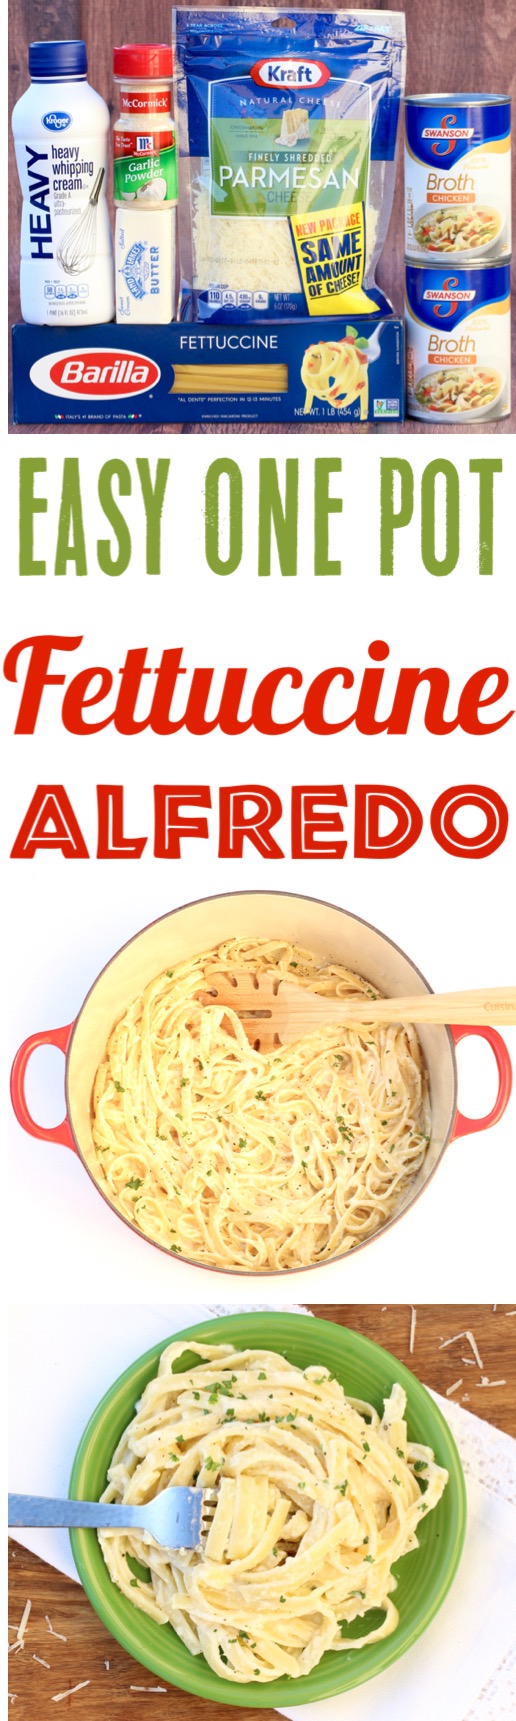 One Pot Fettuccine Alfredo Recipe Easy Pasta Dinner